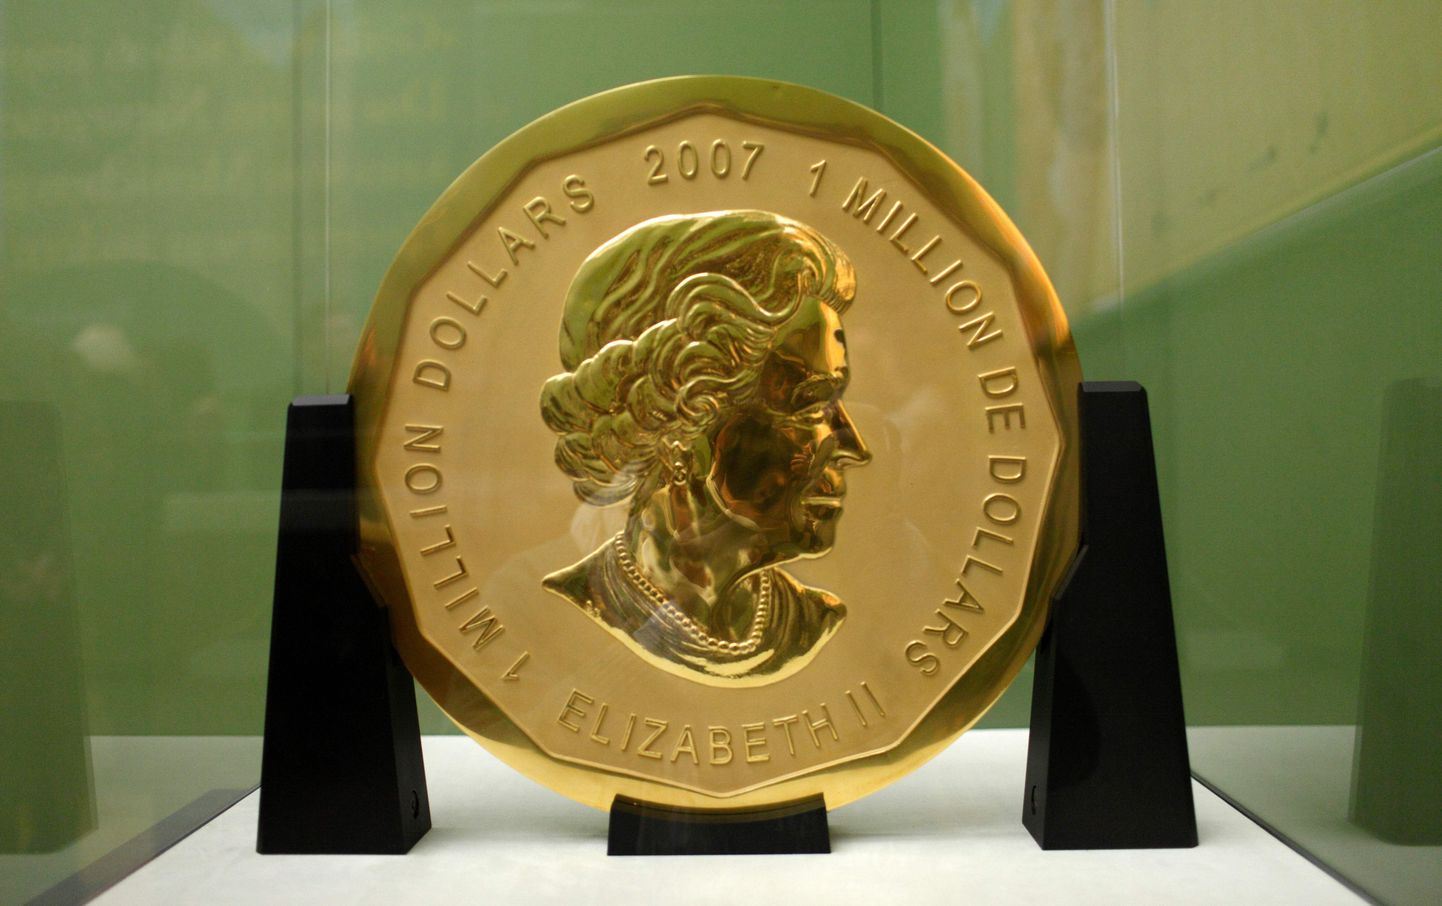 Varastatud 100-kilone kuldmünt